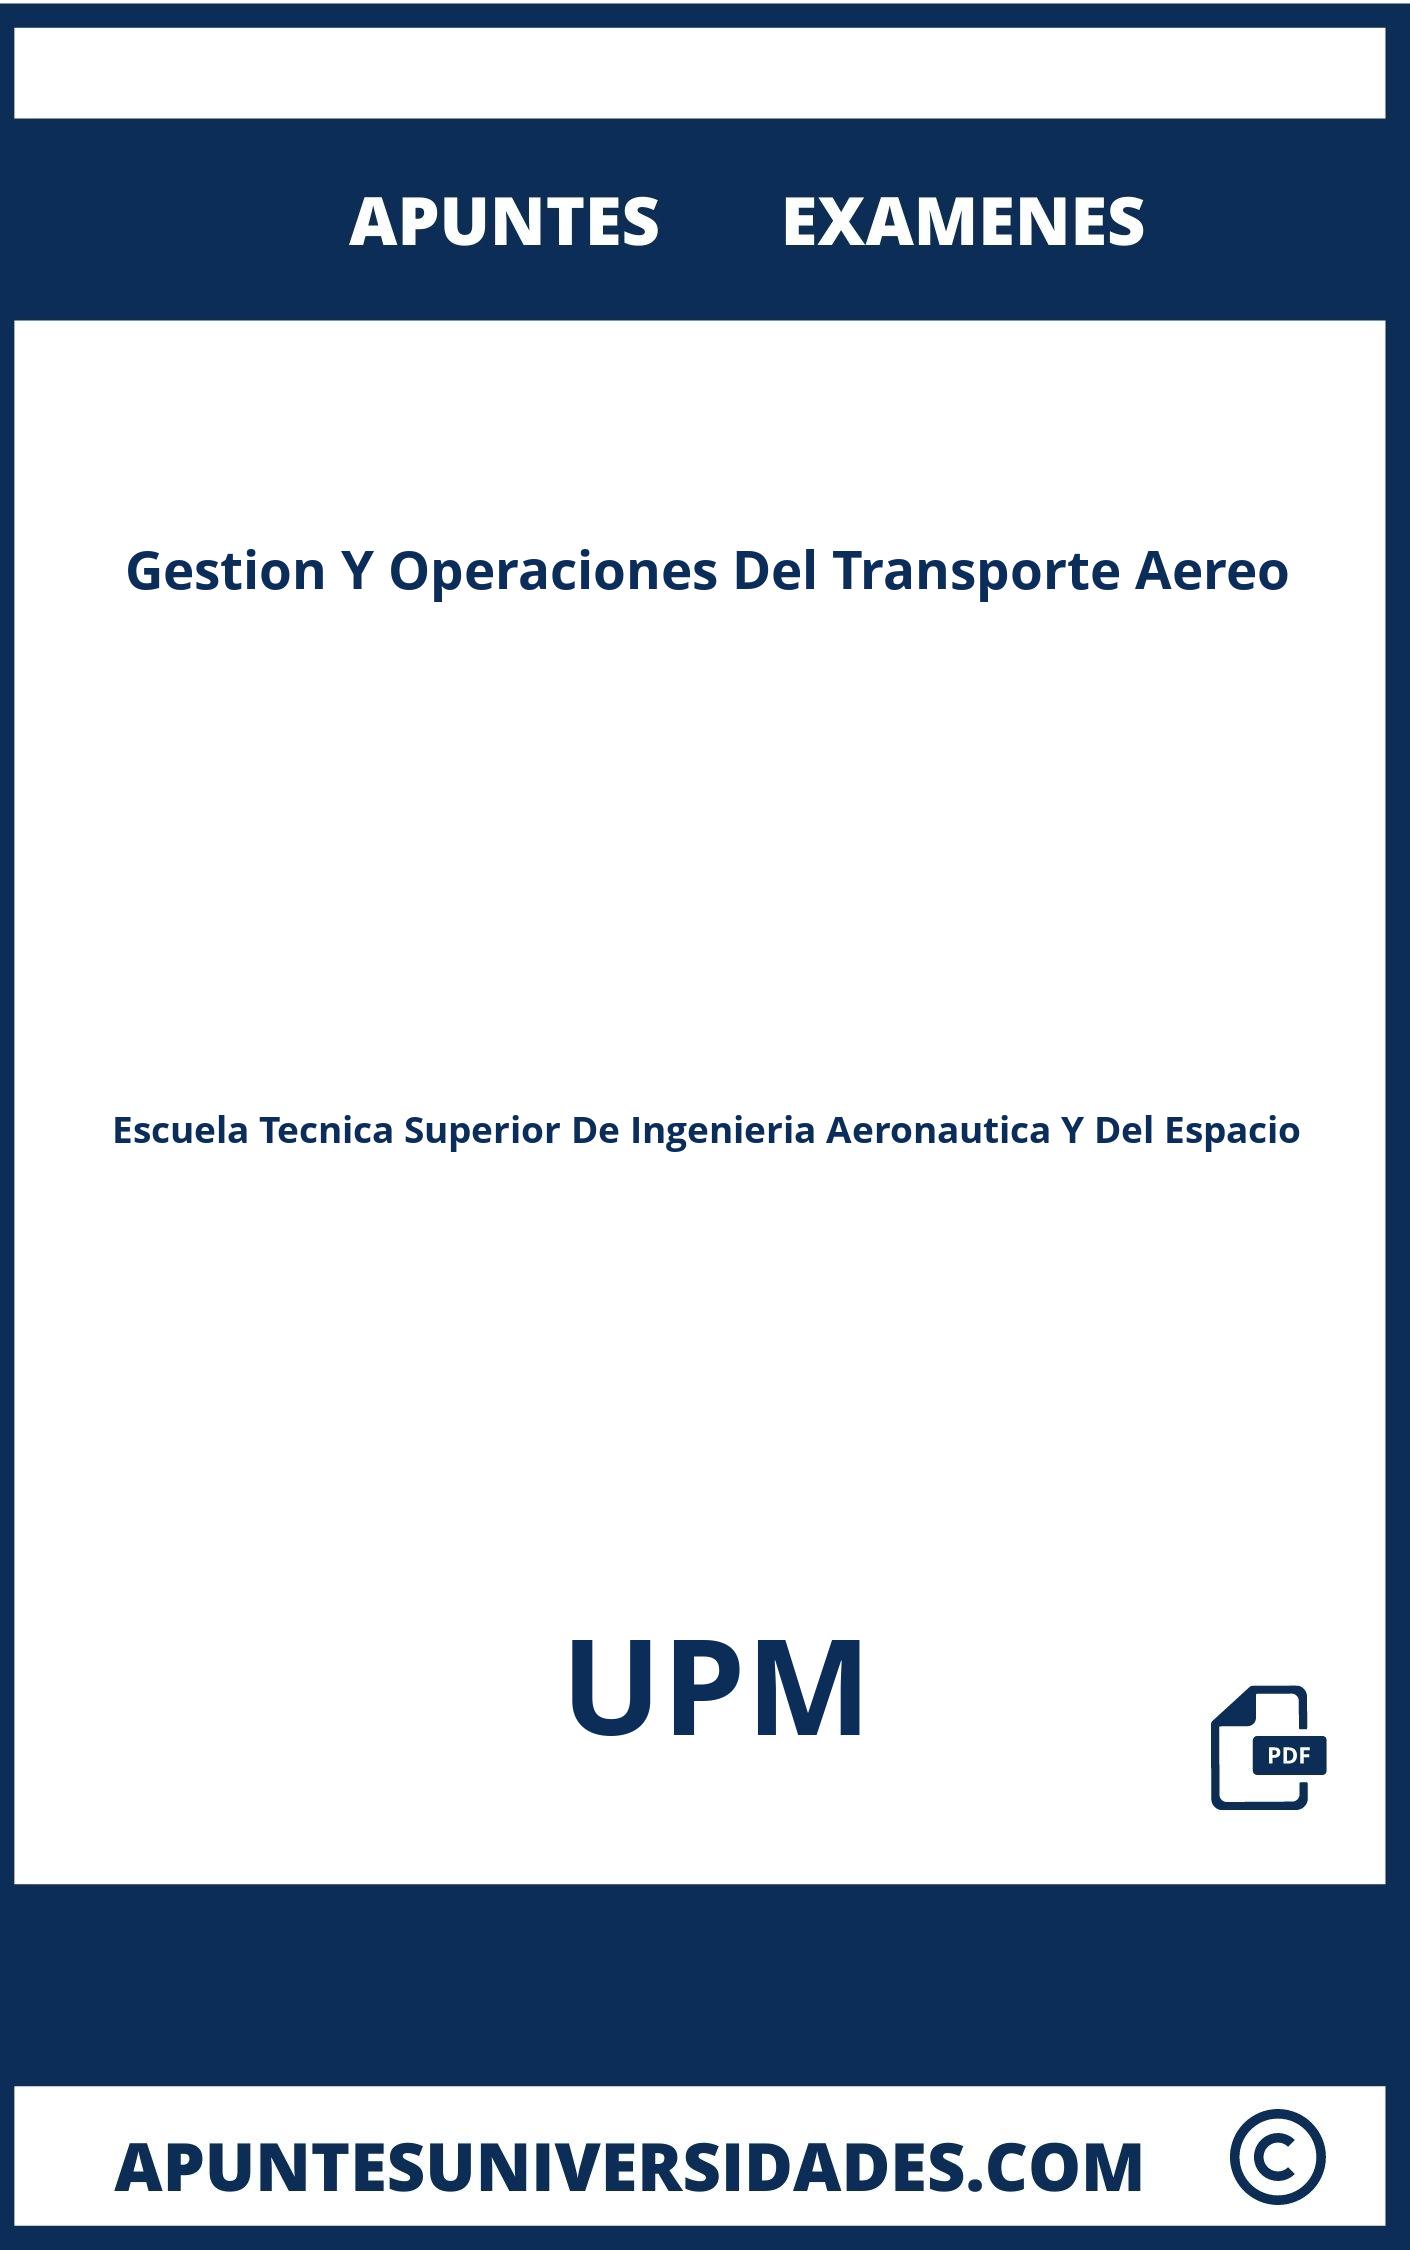 Examenes Gestion Y Operaciones Del Transporte Aereo UPM y Apuntes